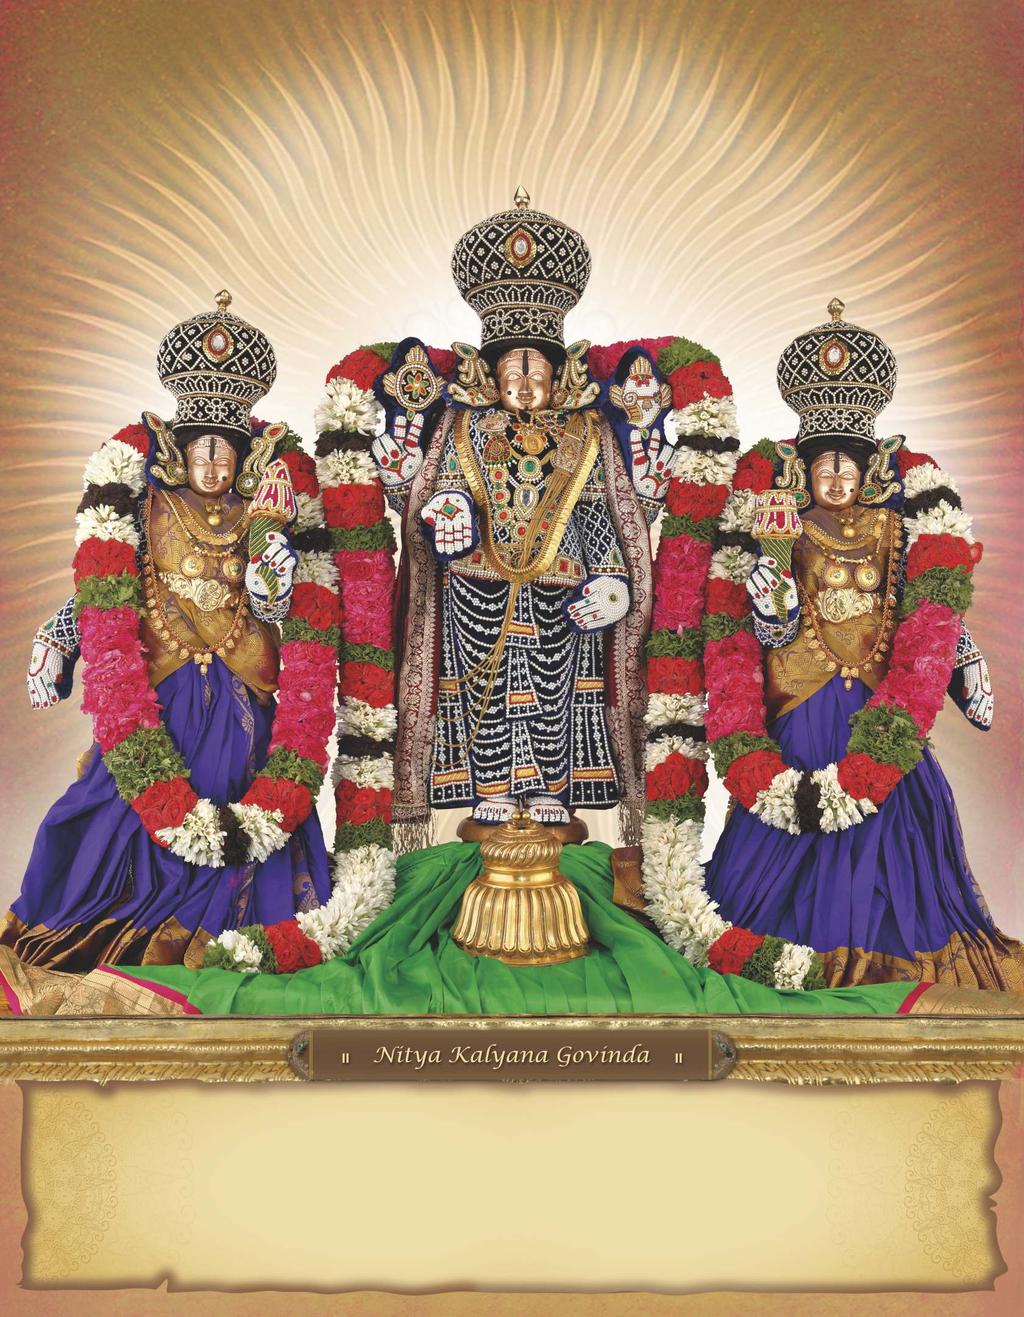 Tirumala Devasthanams Sri Kalyana Venkateswara Swamivaru with His Consorts, Sridevi & Bhoodevi, Srinivasa Mangapuram March 2018 Thu Fri Sat Sun Mon Tue Wed Thu Fri Sat Sun Mon Tue Wed Thu Fri Sat 18